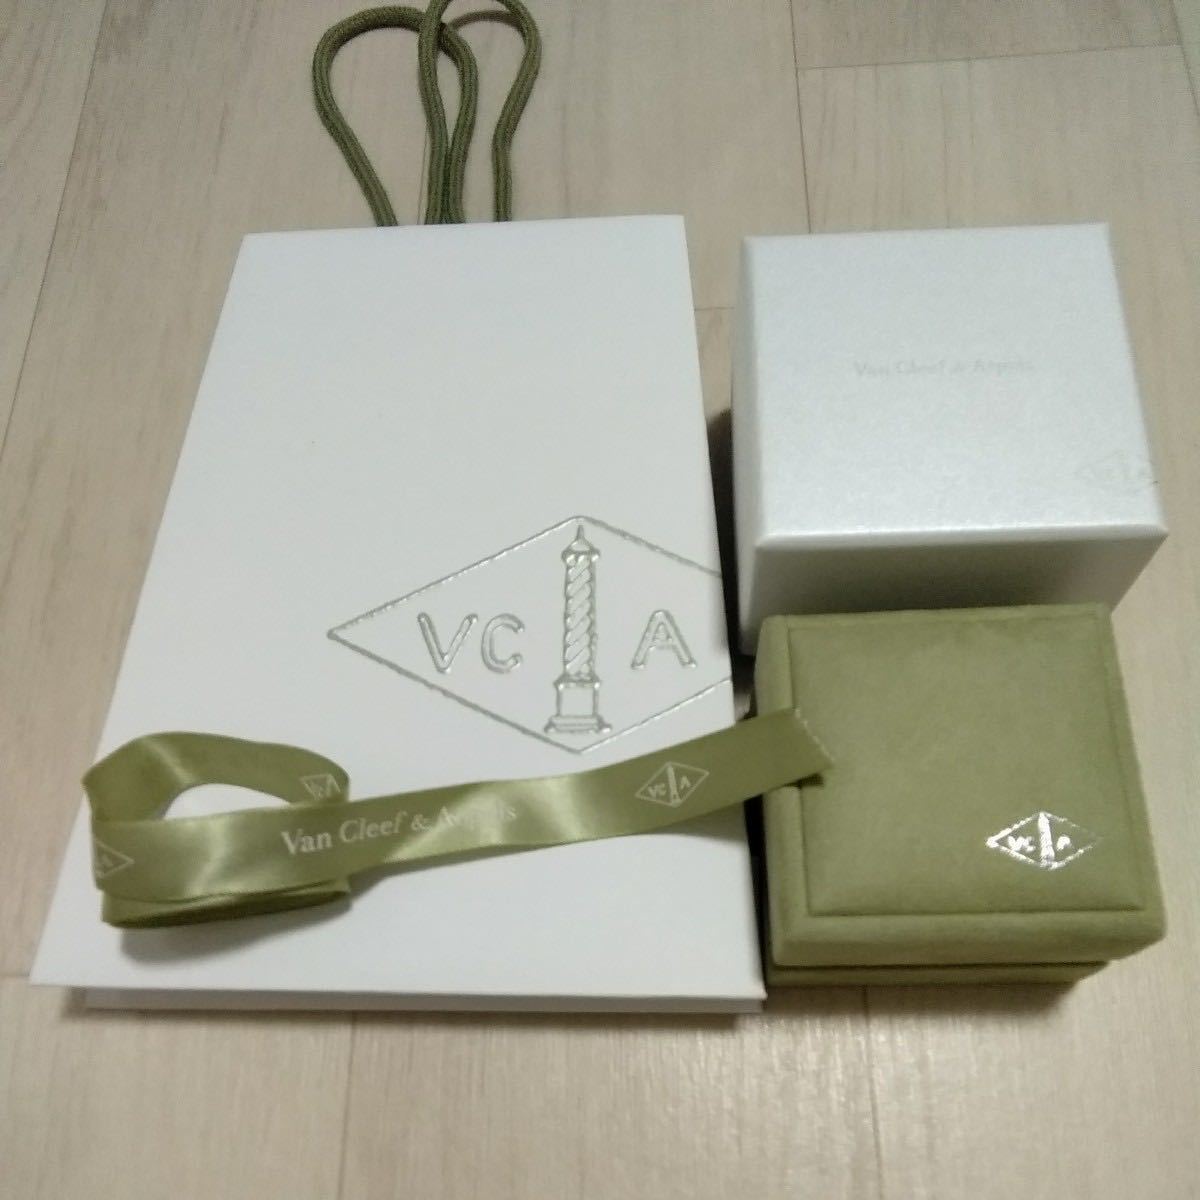 [ пустой коробка ] Van Cleef & Arpels Van Cleef&Arpels кольцо кейс кольцо кейс коробка лента бумажный пакет 